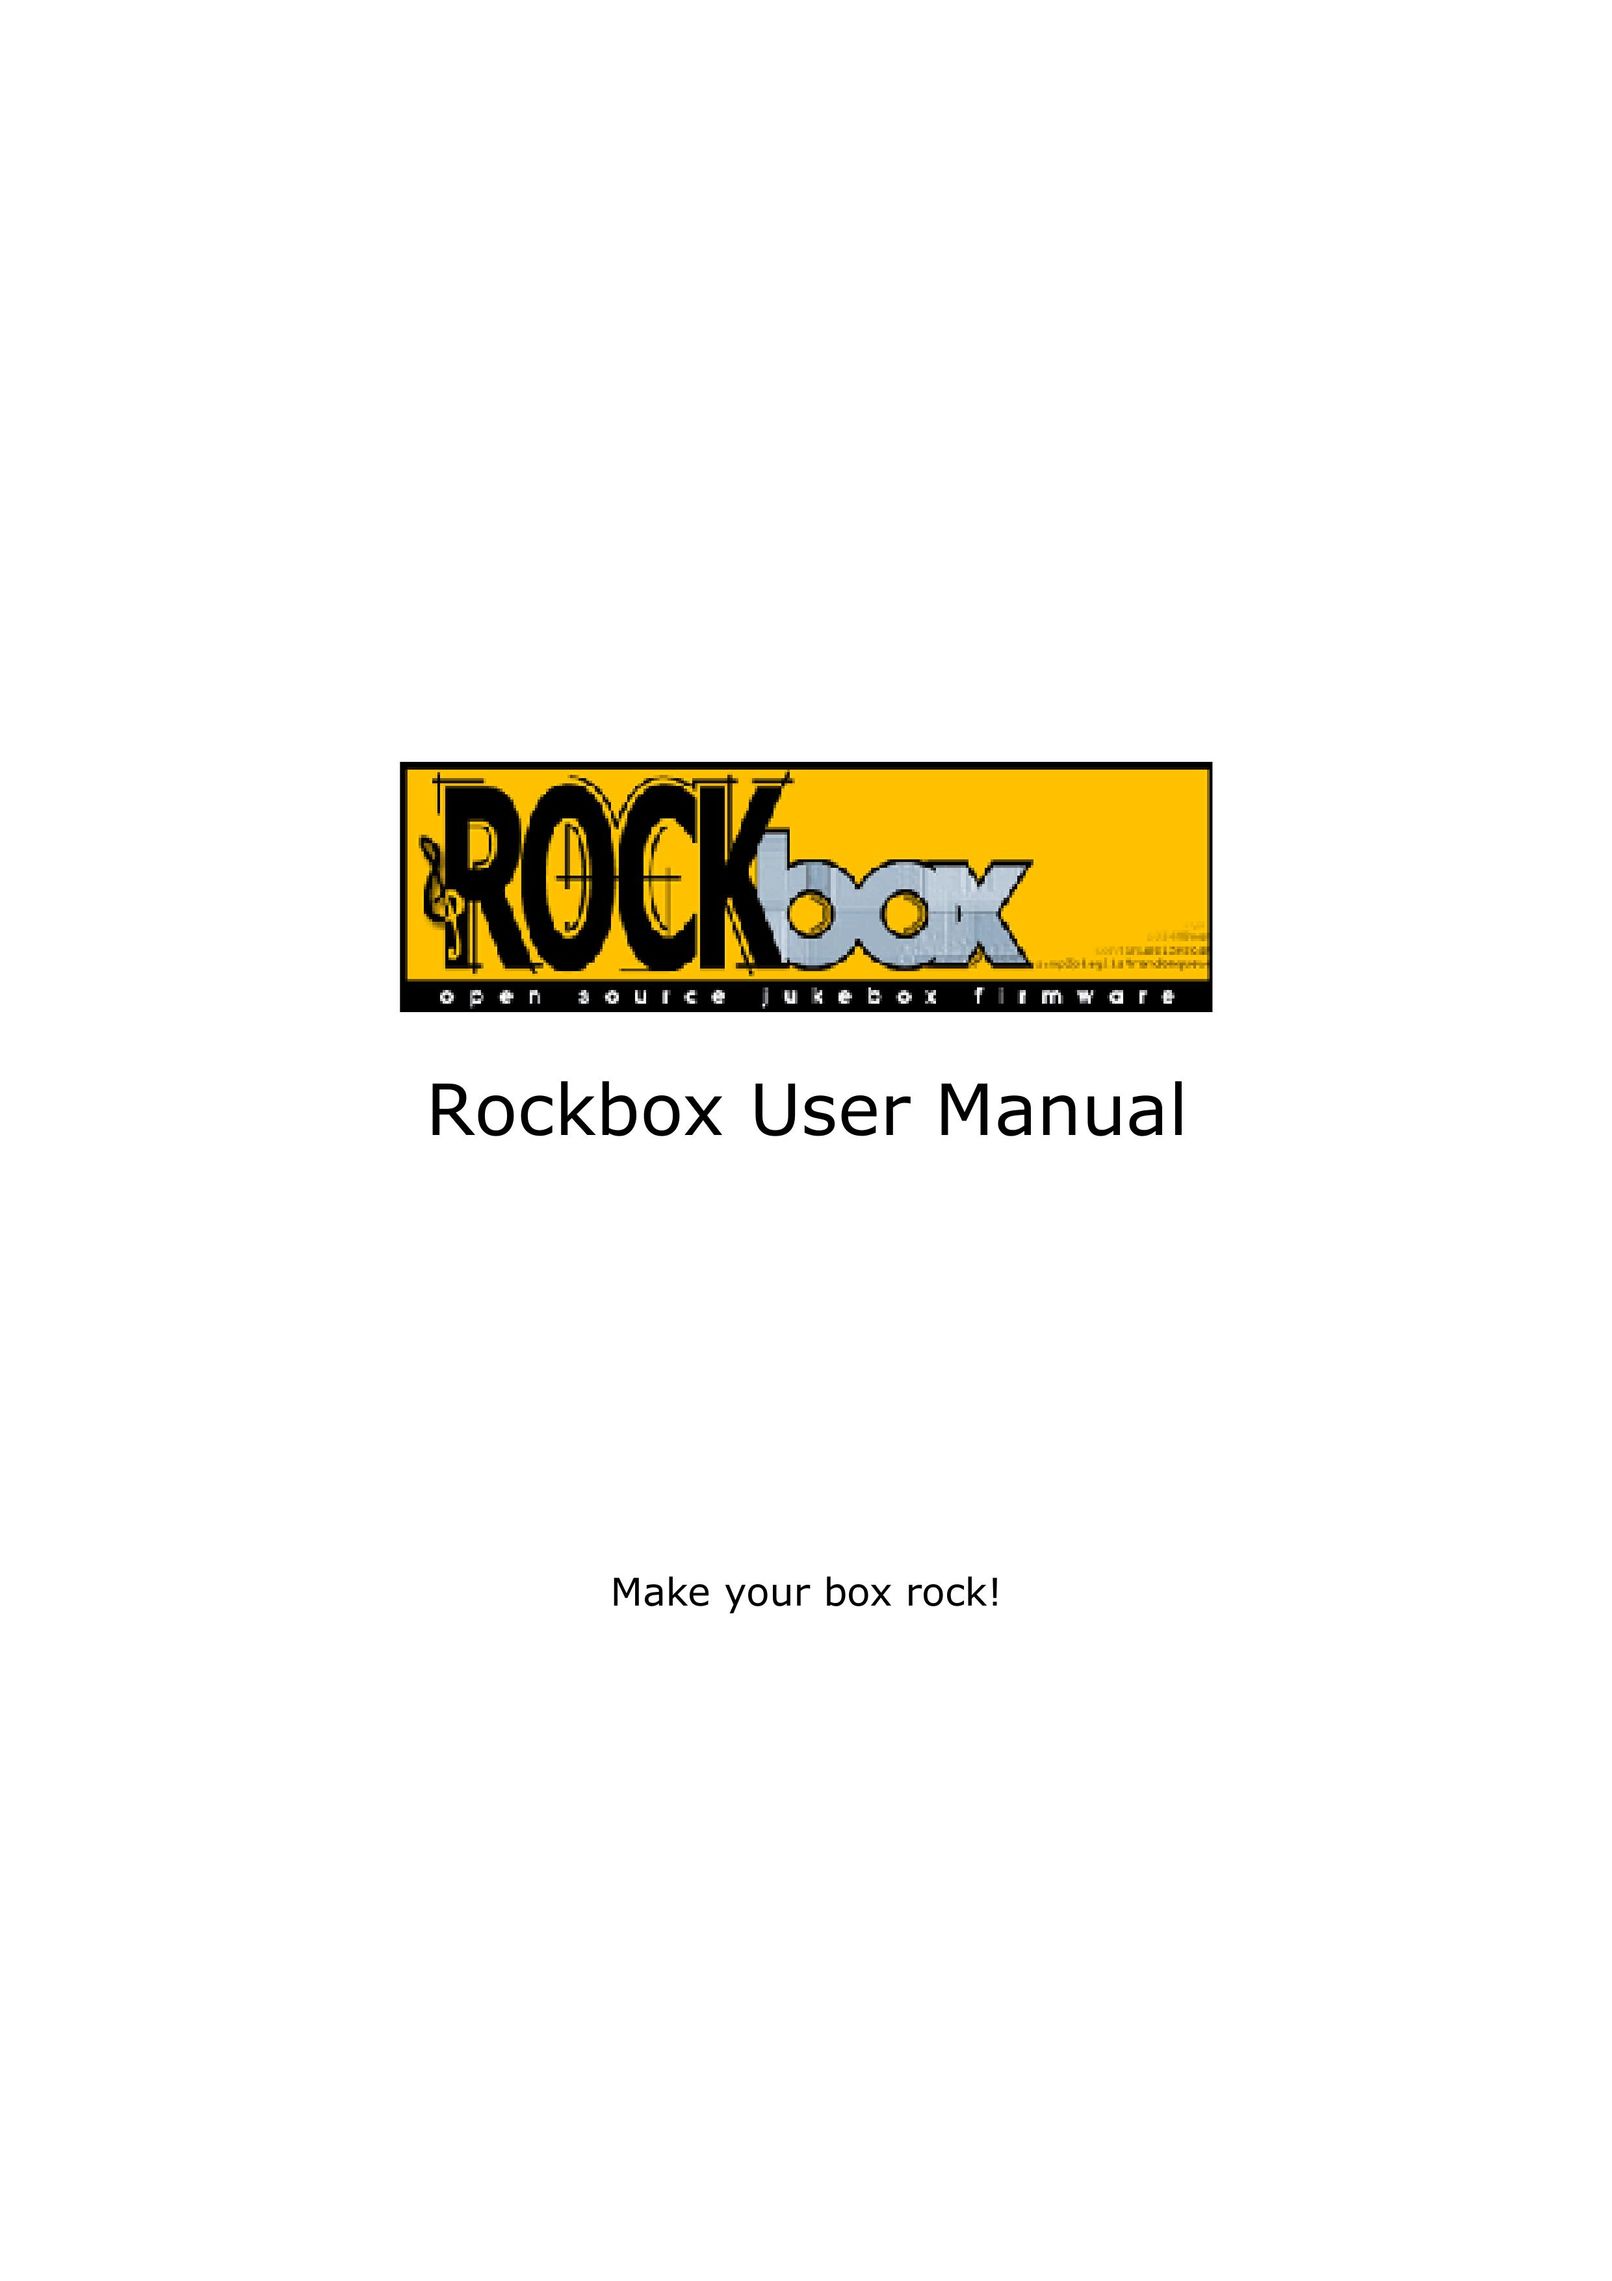 Archos box rock Board Games User Manual